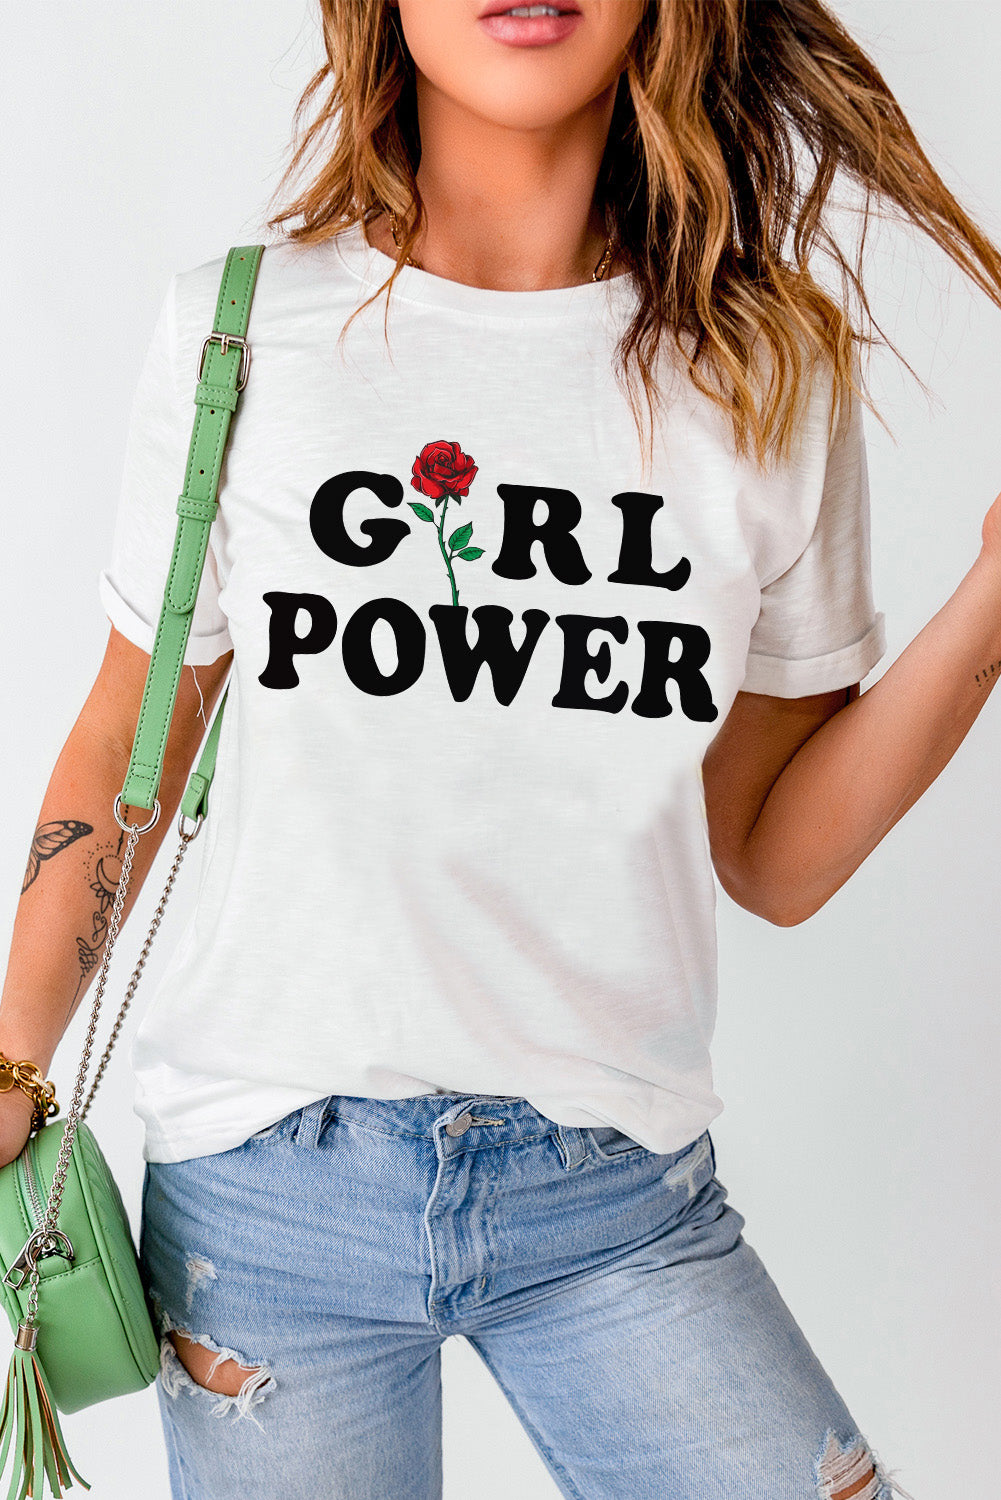 GIRL POWER Rose Graphic Tee Shirt